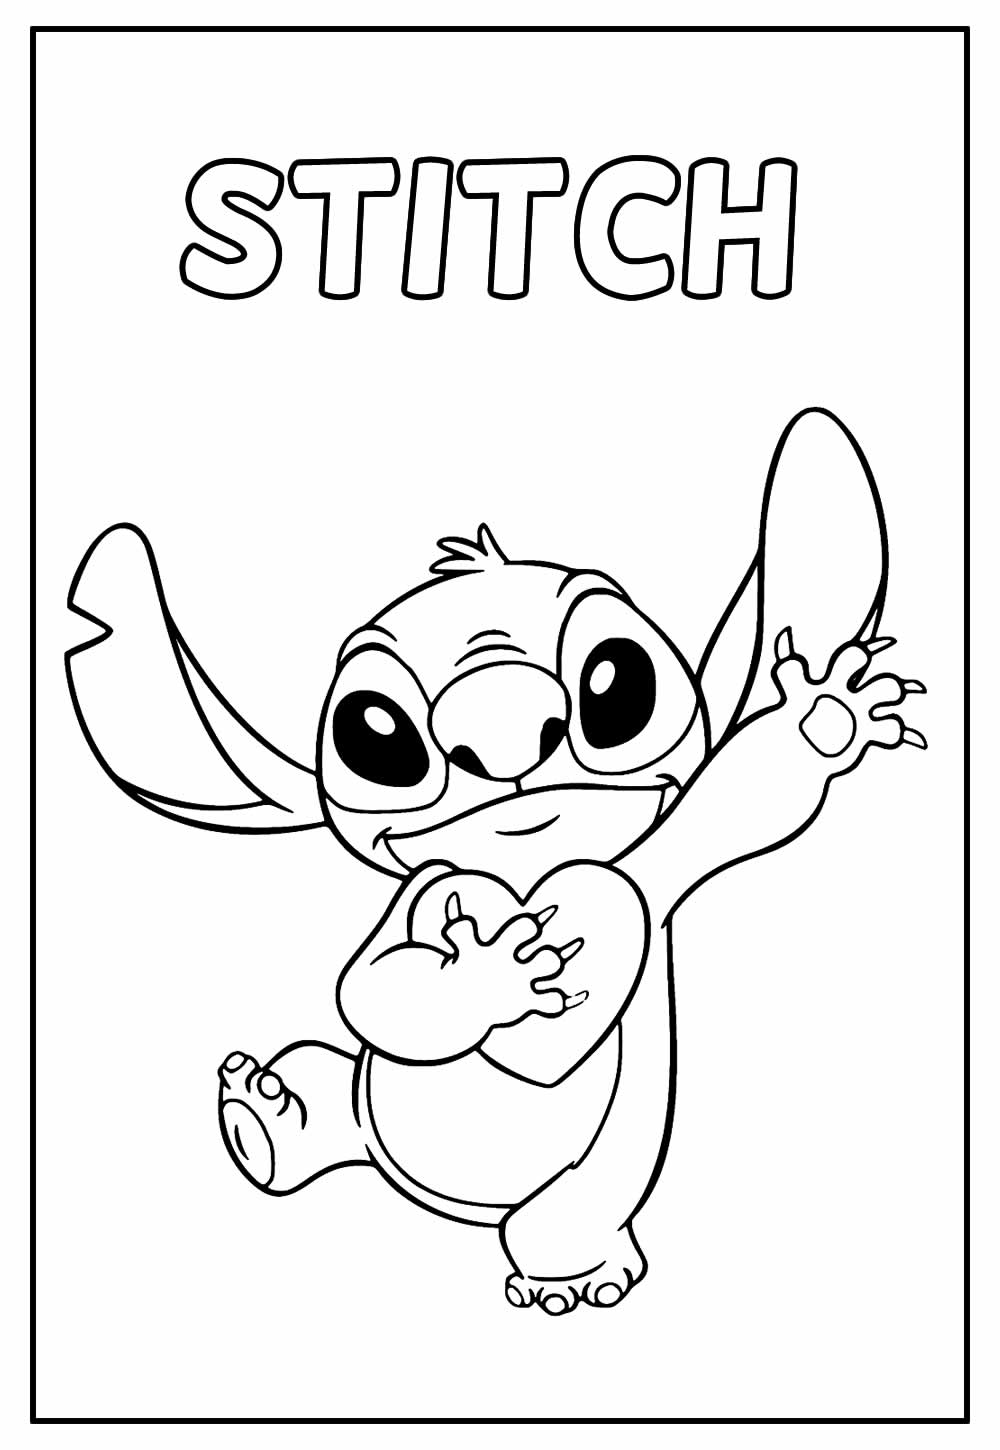 Desenhos do Stitch para colorir - Bora Colorir